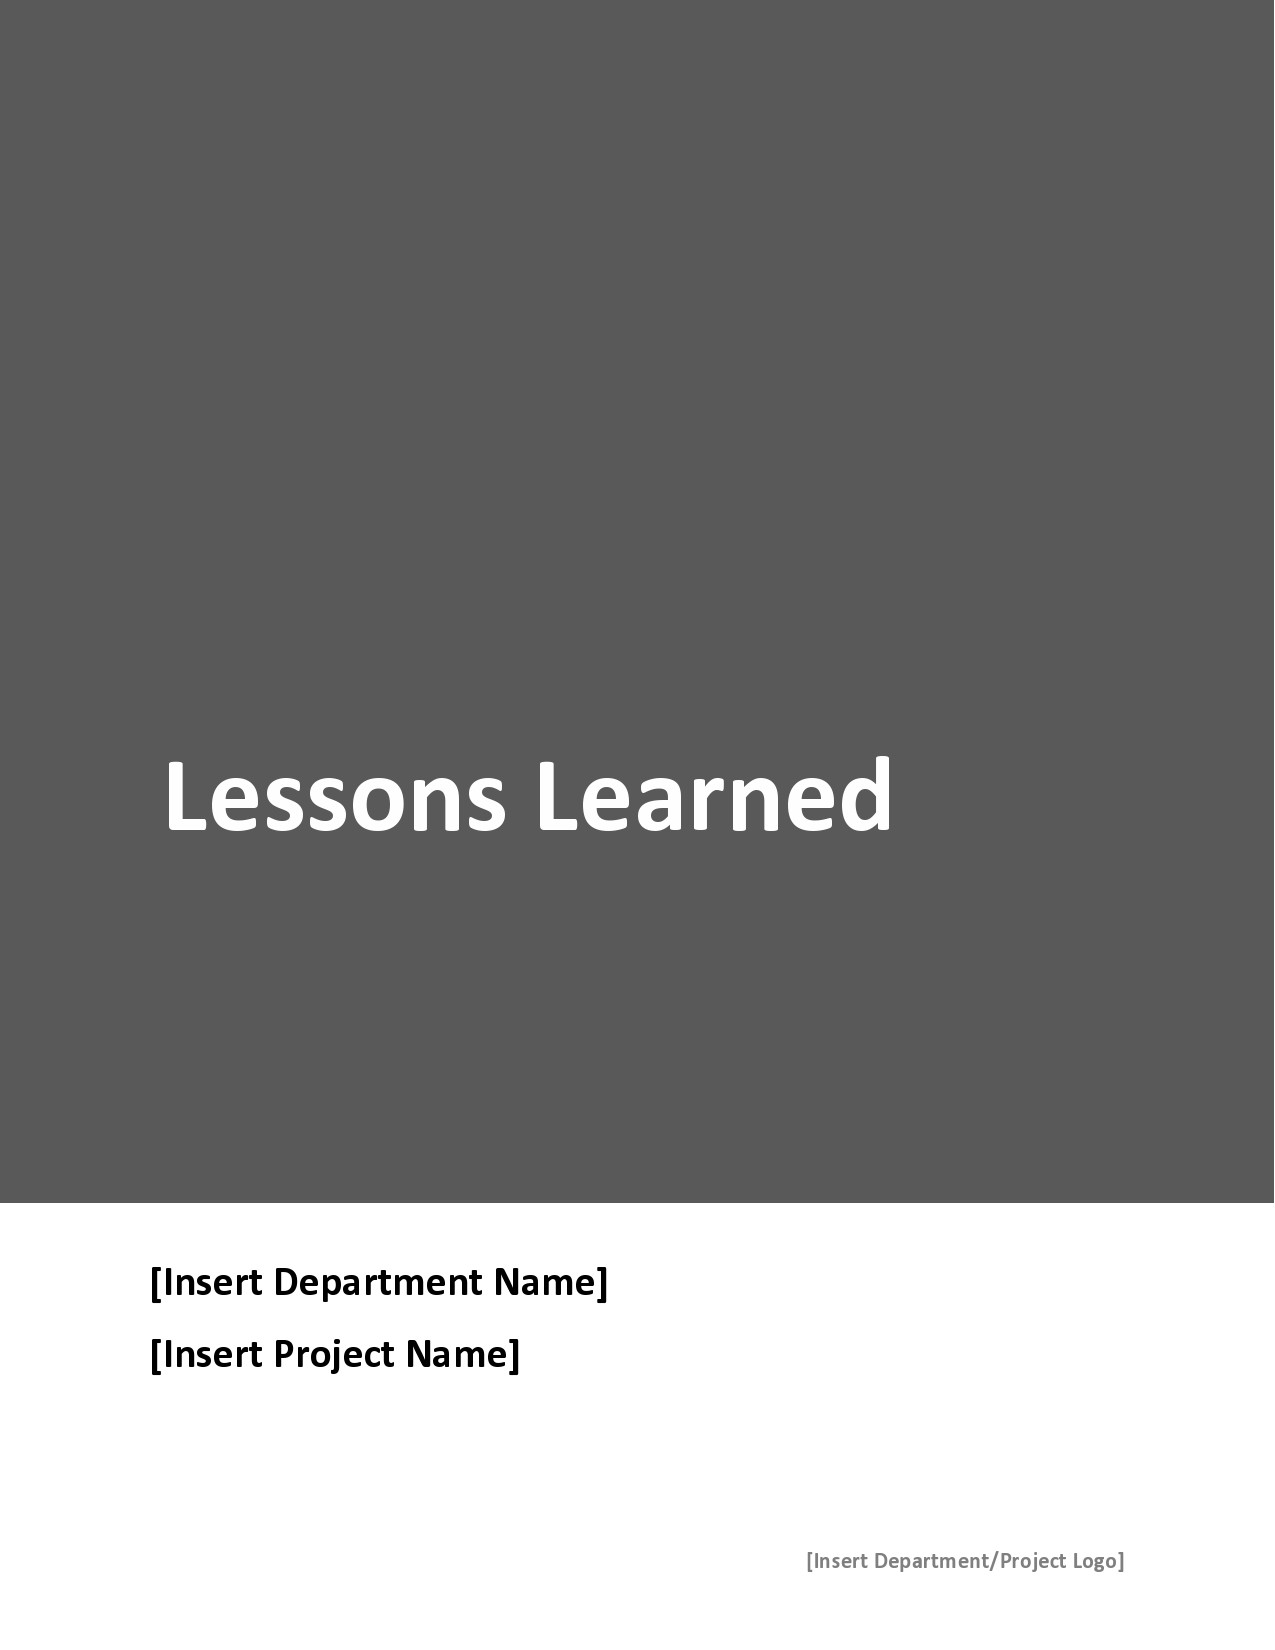 Lecciones libres aprendidas plantilla 05